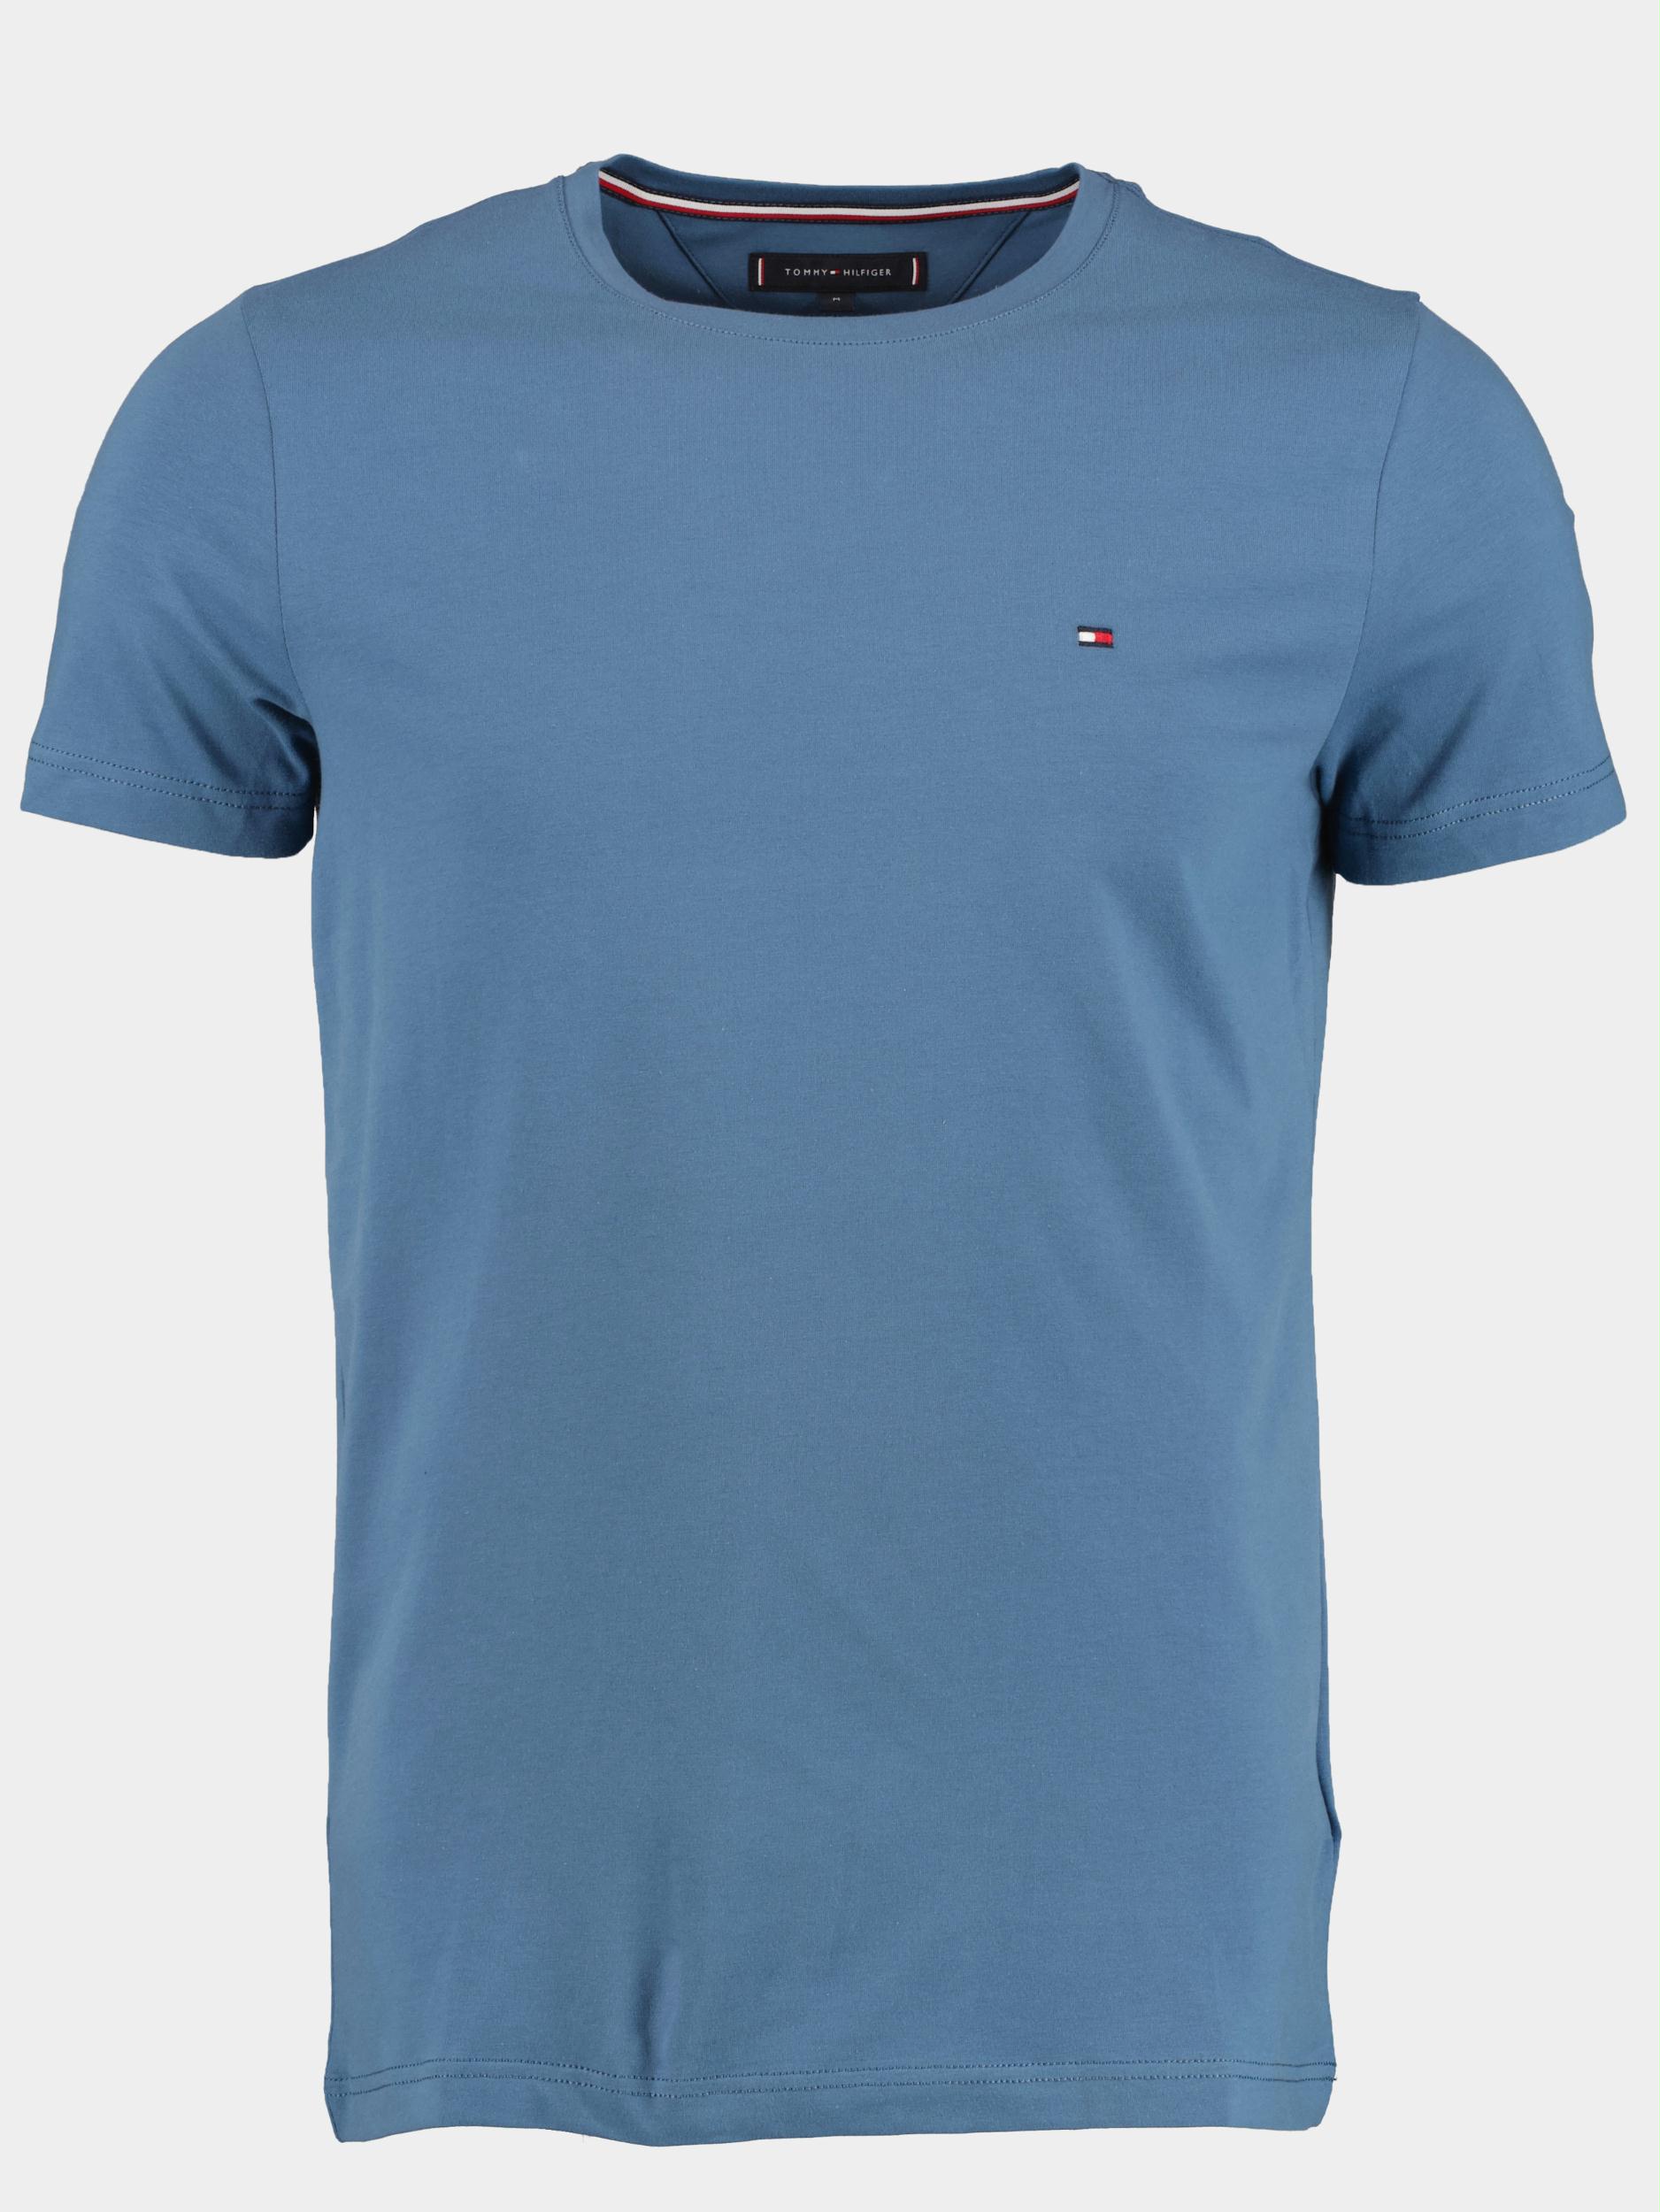 Tommy Hilfiger T-shirt korte mouw Blauw Stretch Slim fit tee MW0MW10800/DBX